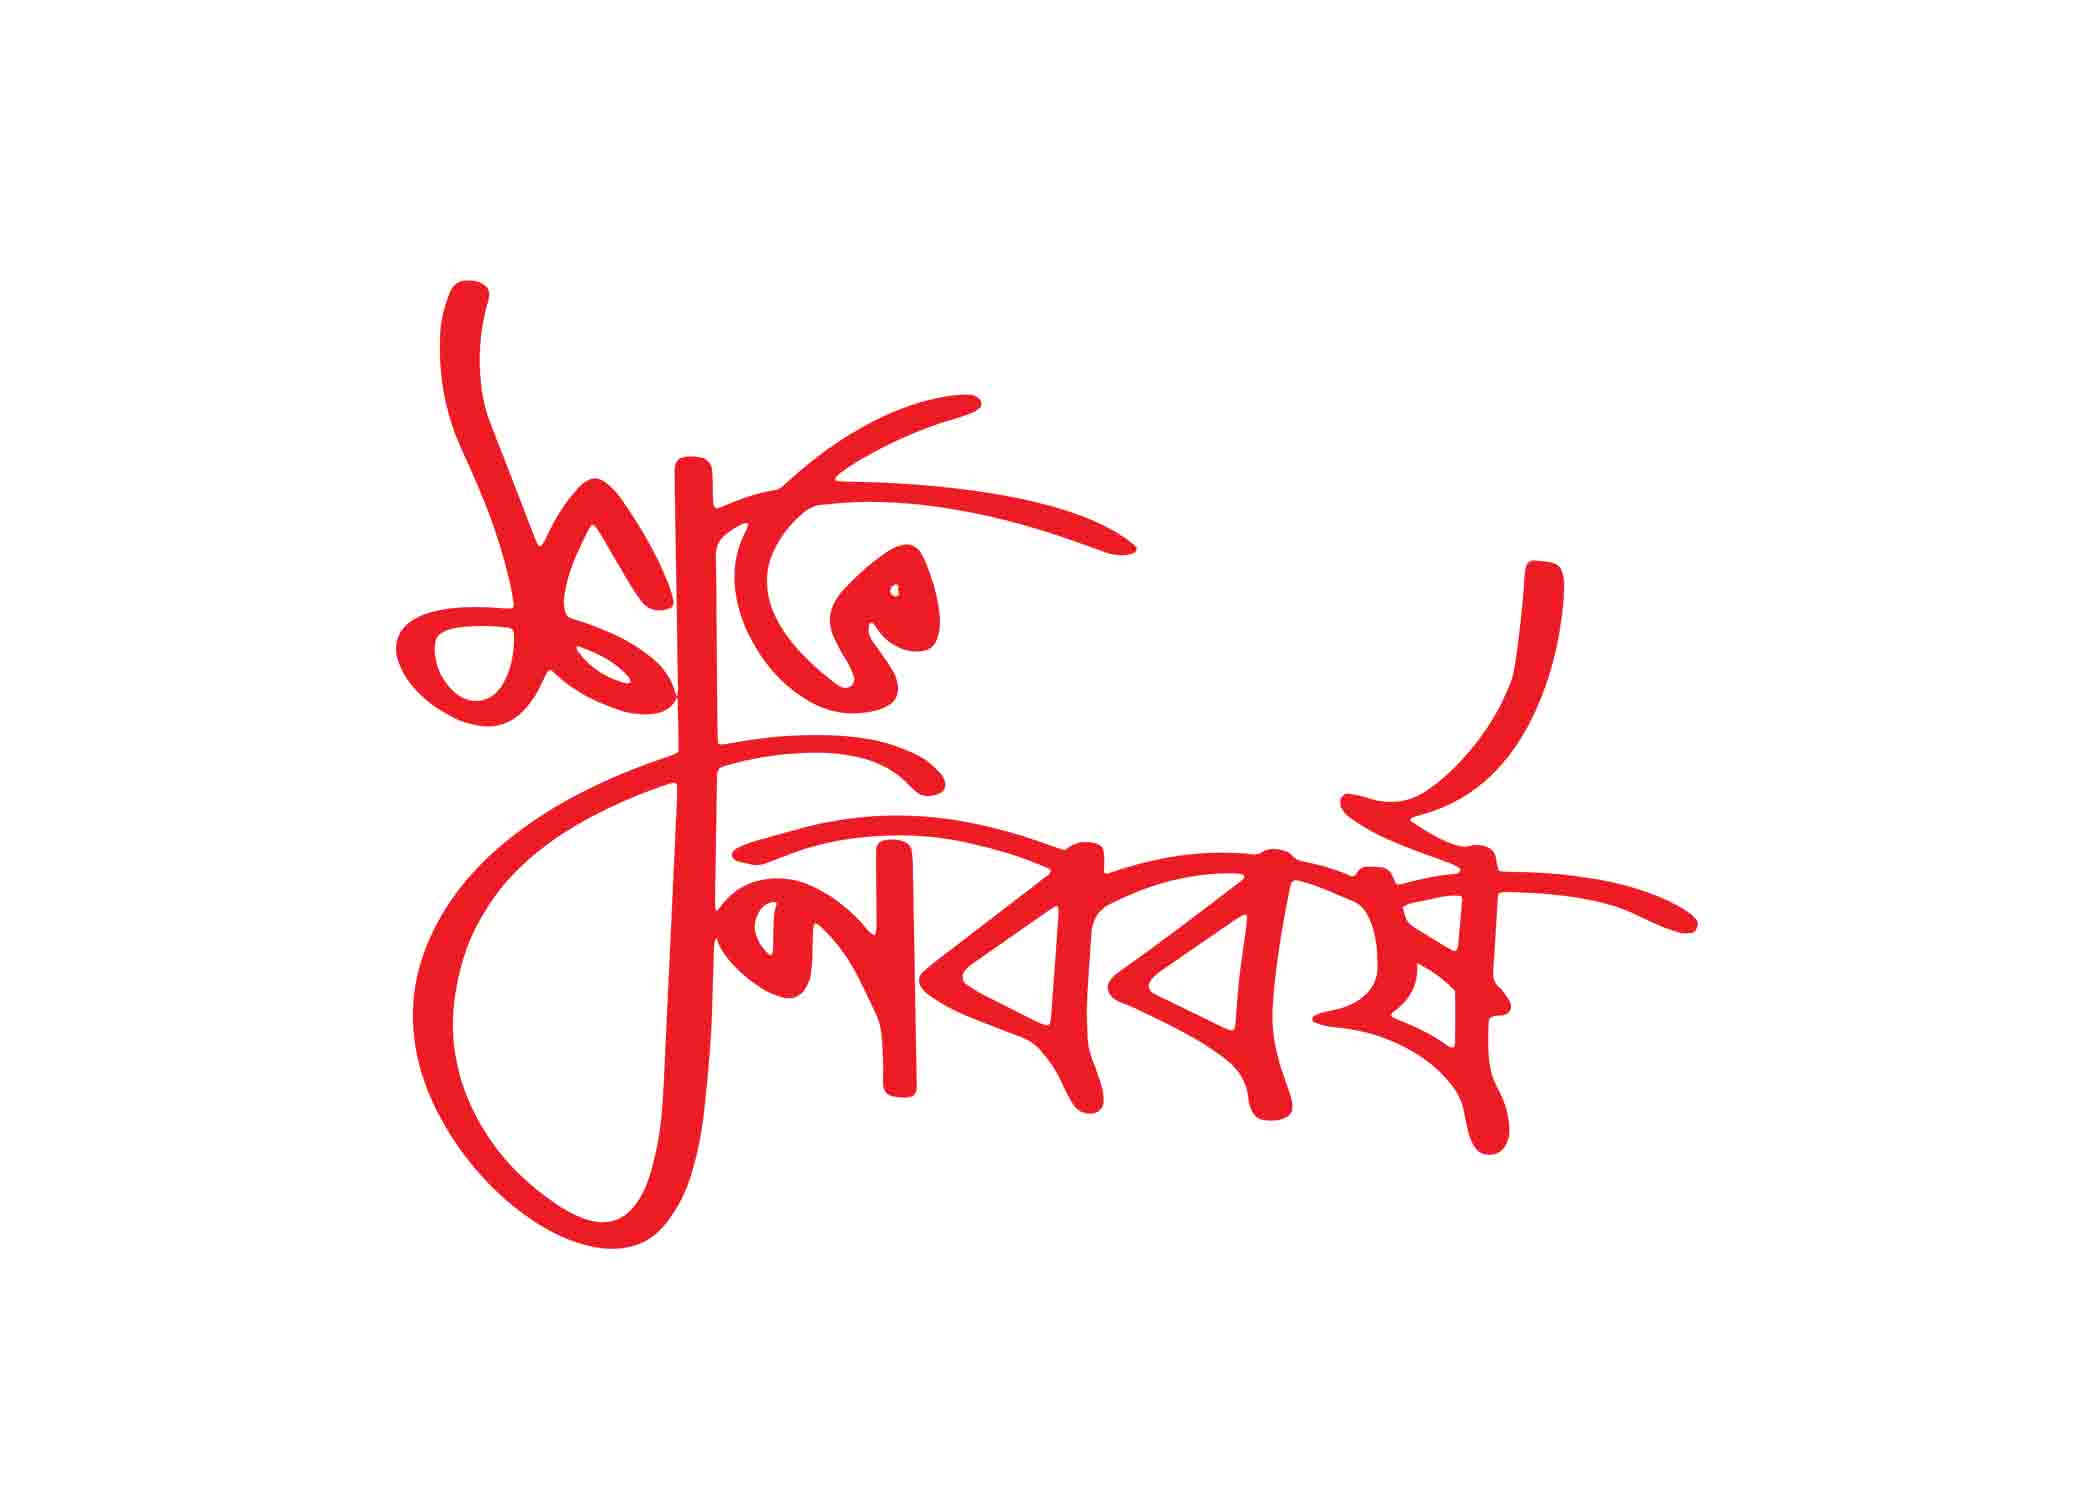 শুভ নববর্ষ- Shuvo noboborsho টাইপোগ্রাফি । Bangla Typography PNG